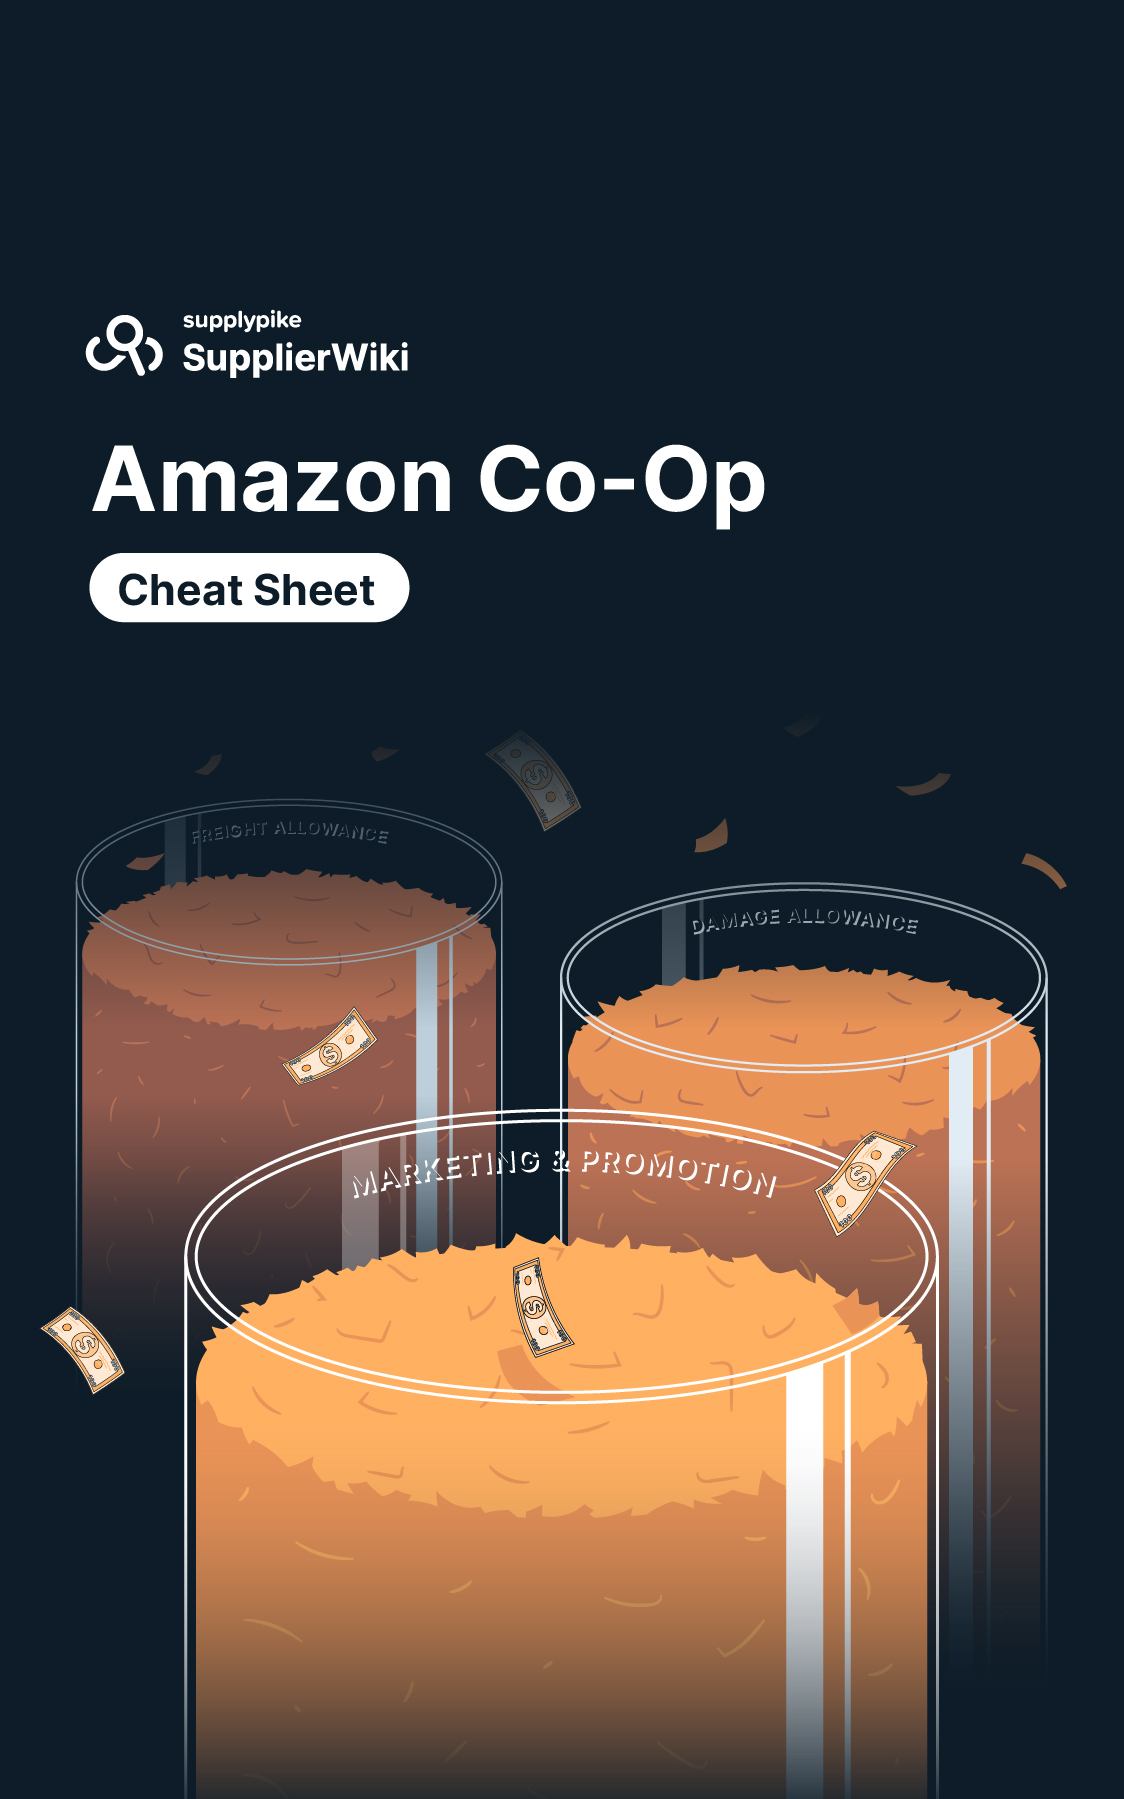 Amazon Co-Op Cheat Sheet